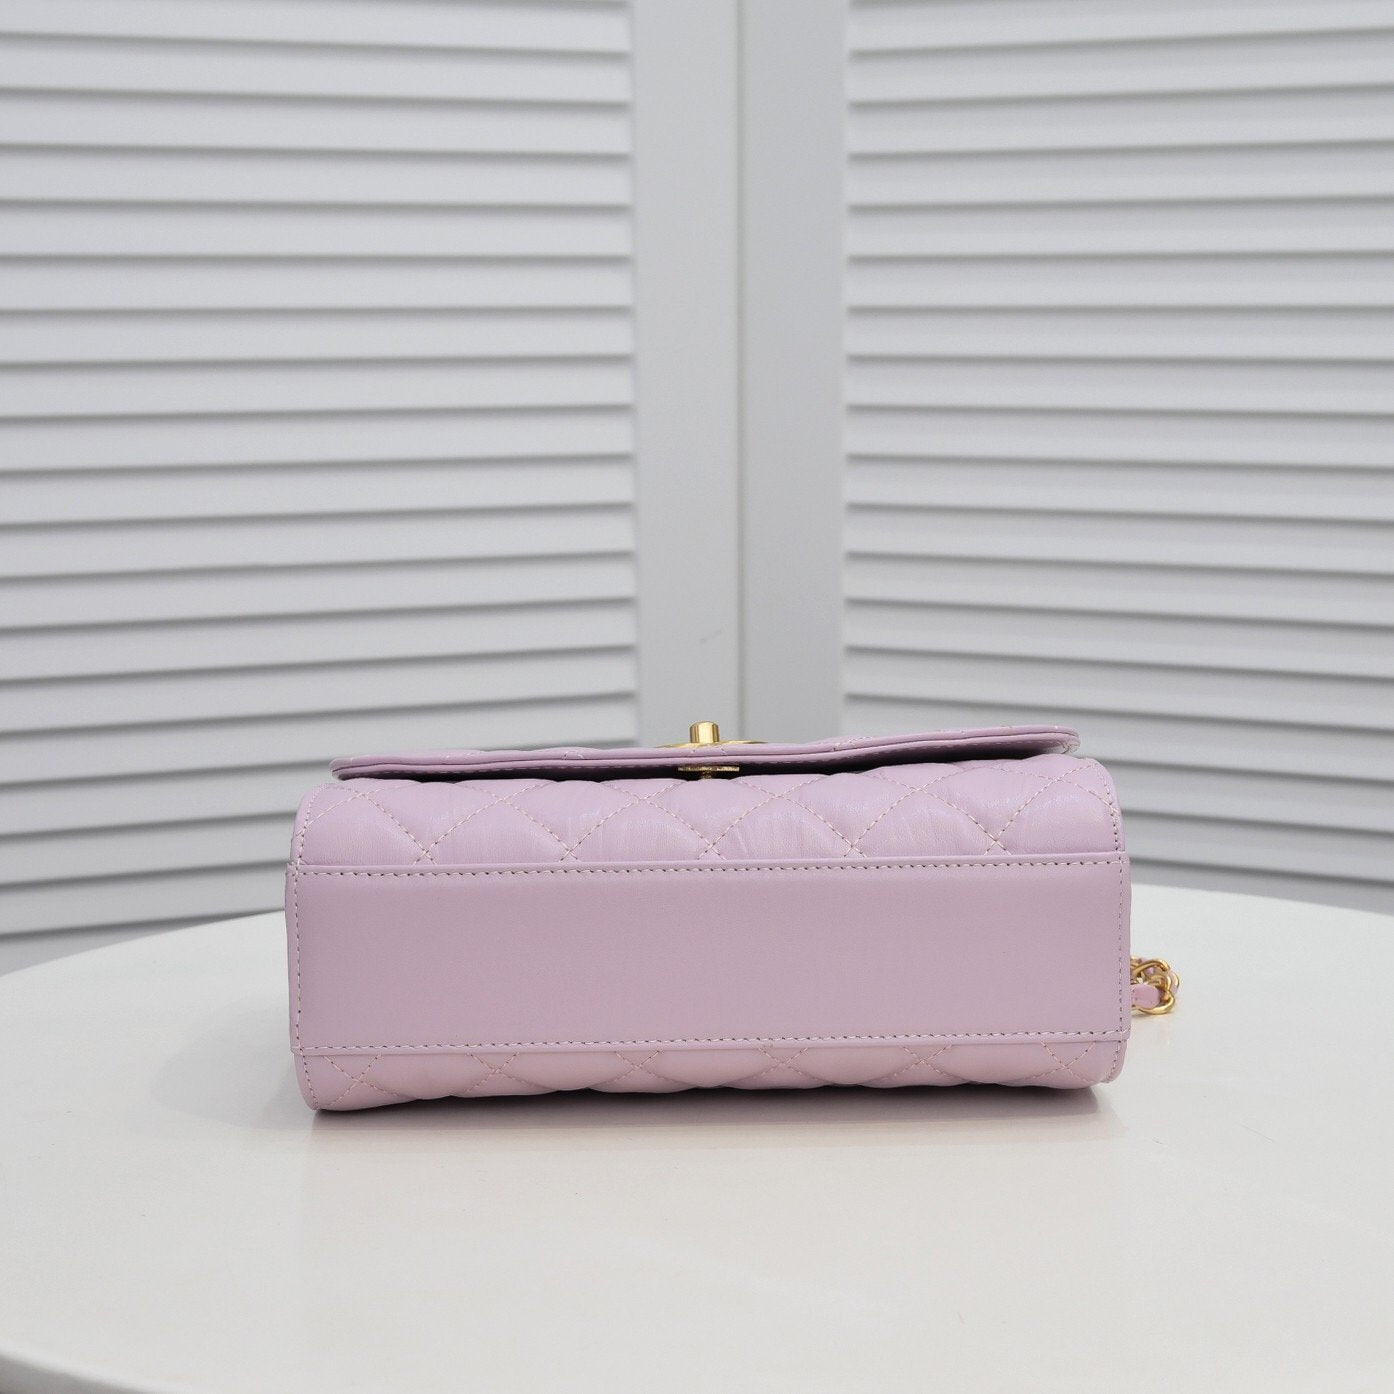 Designer Handbags CL 083